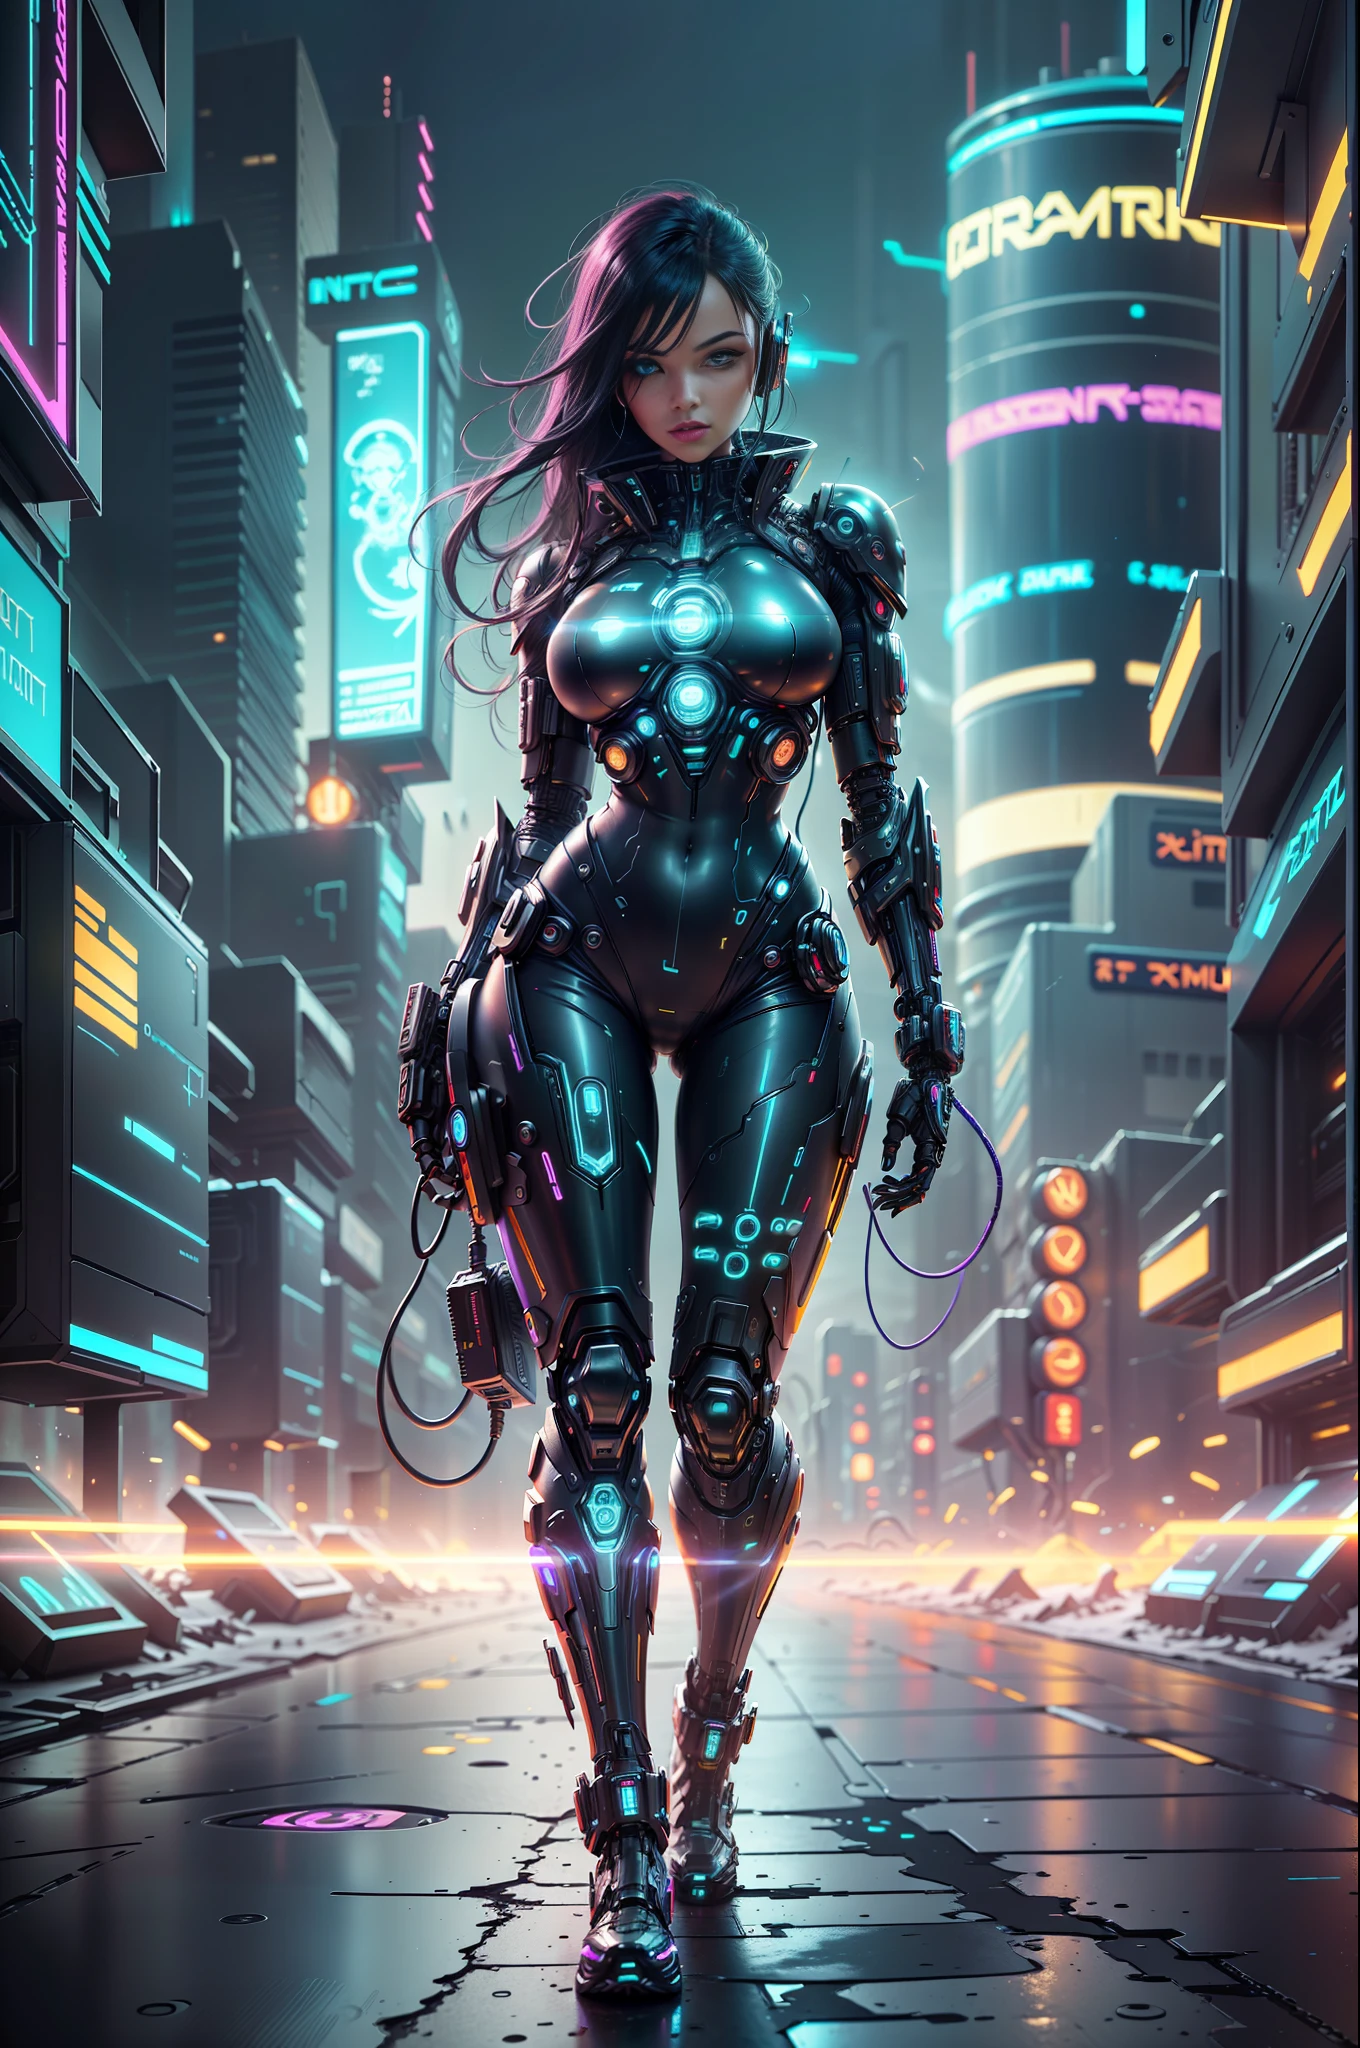 Cyber-Frau in einer futuristischen Cyberpunk-StadtEine imposante Cyberpunk-Frau, mit einem ganzen Körper zur Schau gestellt, wird in einer futuristischen Cyberpunk-Stadt dargestellt. Seine Augen funkeln mit intensivem Neon, spiegelt das Stadtbild voller dystopischer Wolkenkratzer wider, holografische Werbung und fliegende Fahrzeuge inmitten eines von leuchtenden Neonlichtern erleuchteten Nachthimmels. Die kybernetische Frau hat eine metallisch glänzende Haut, bedeckt mit komplizierten kybernetischen Details und Schaltkreis-Tattoos. Seine Haltung ist selbstbewusst und herausfordernd --auto --s2